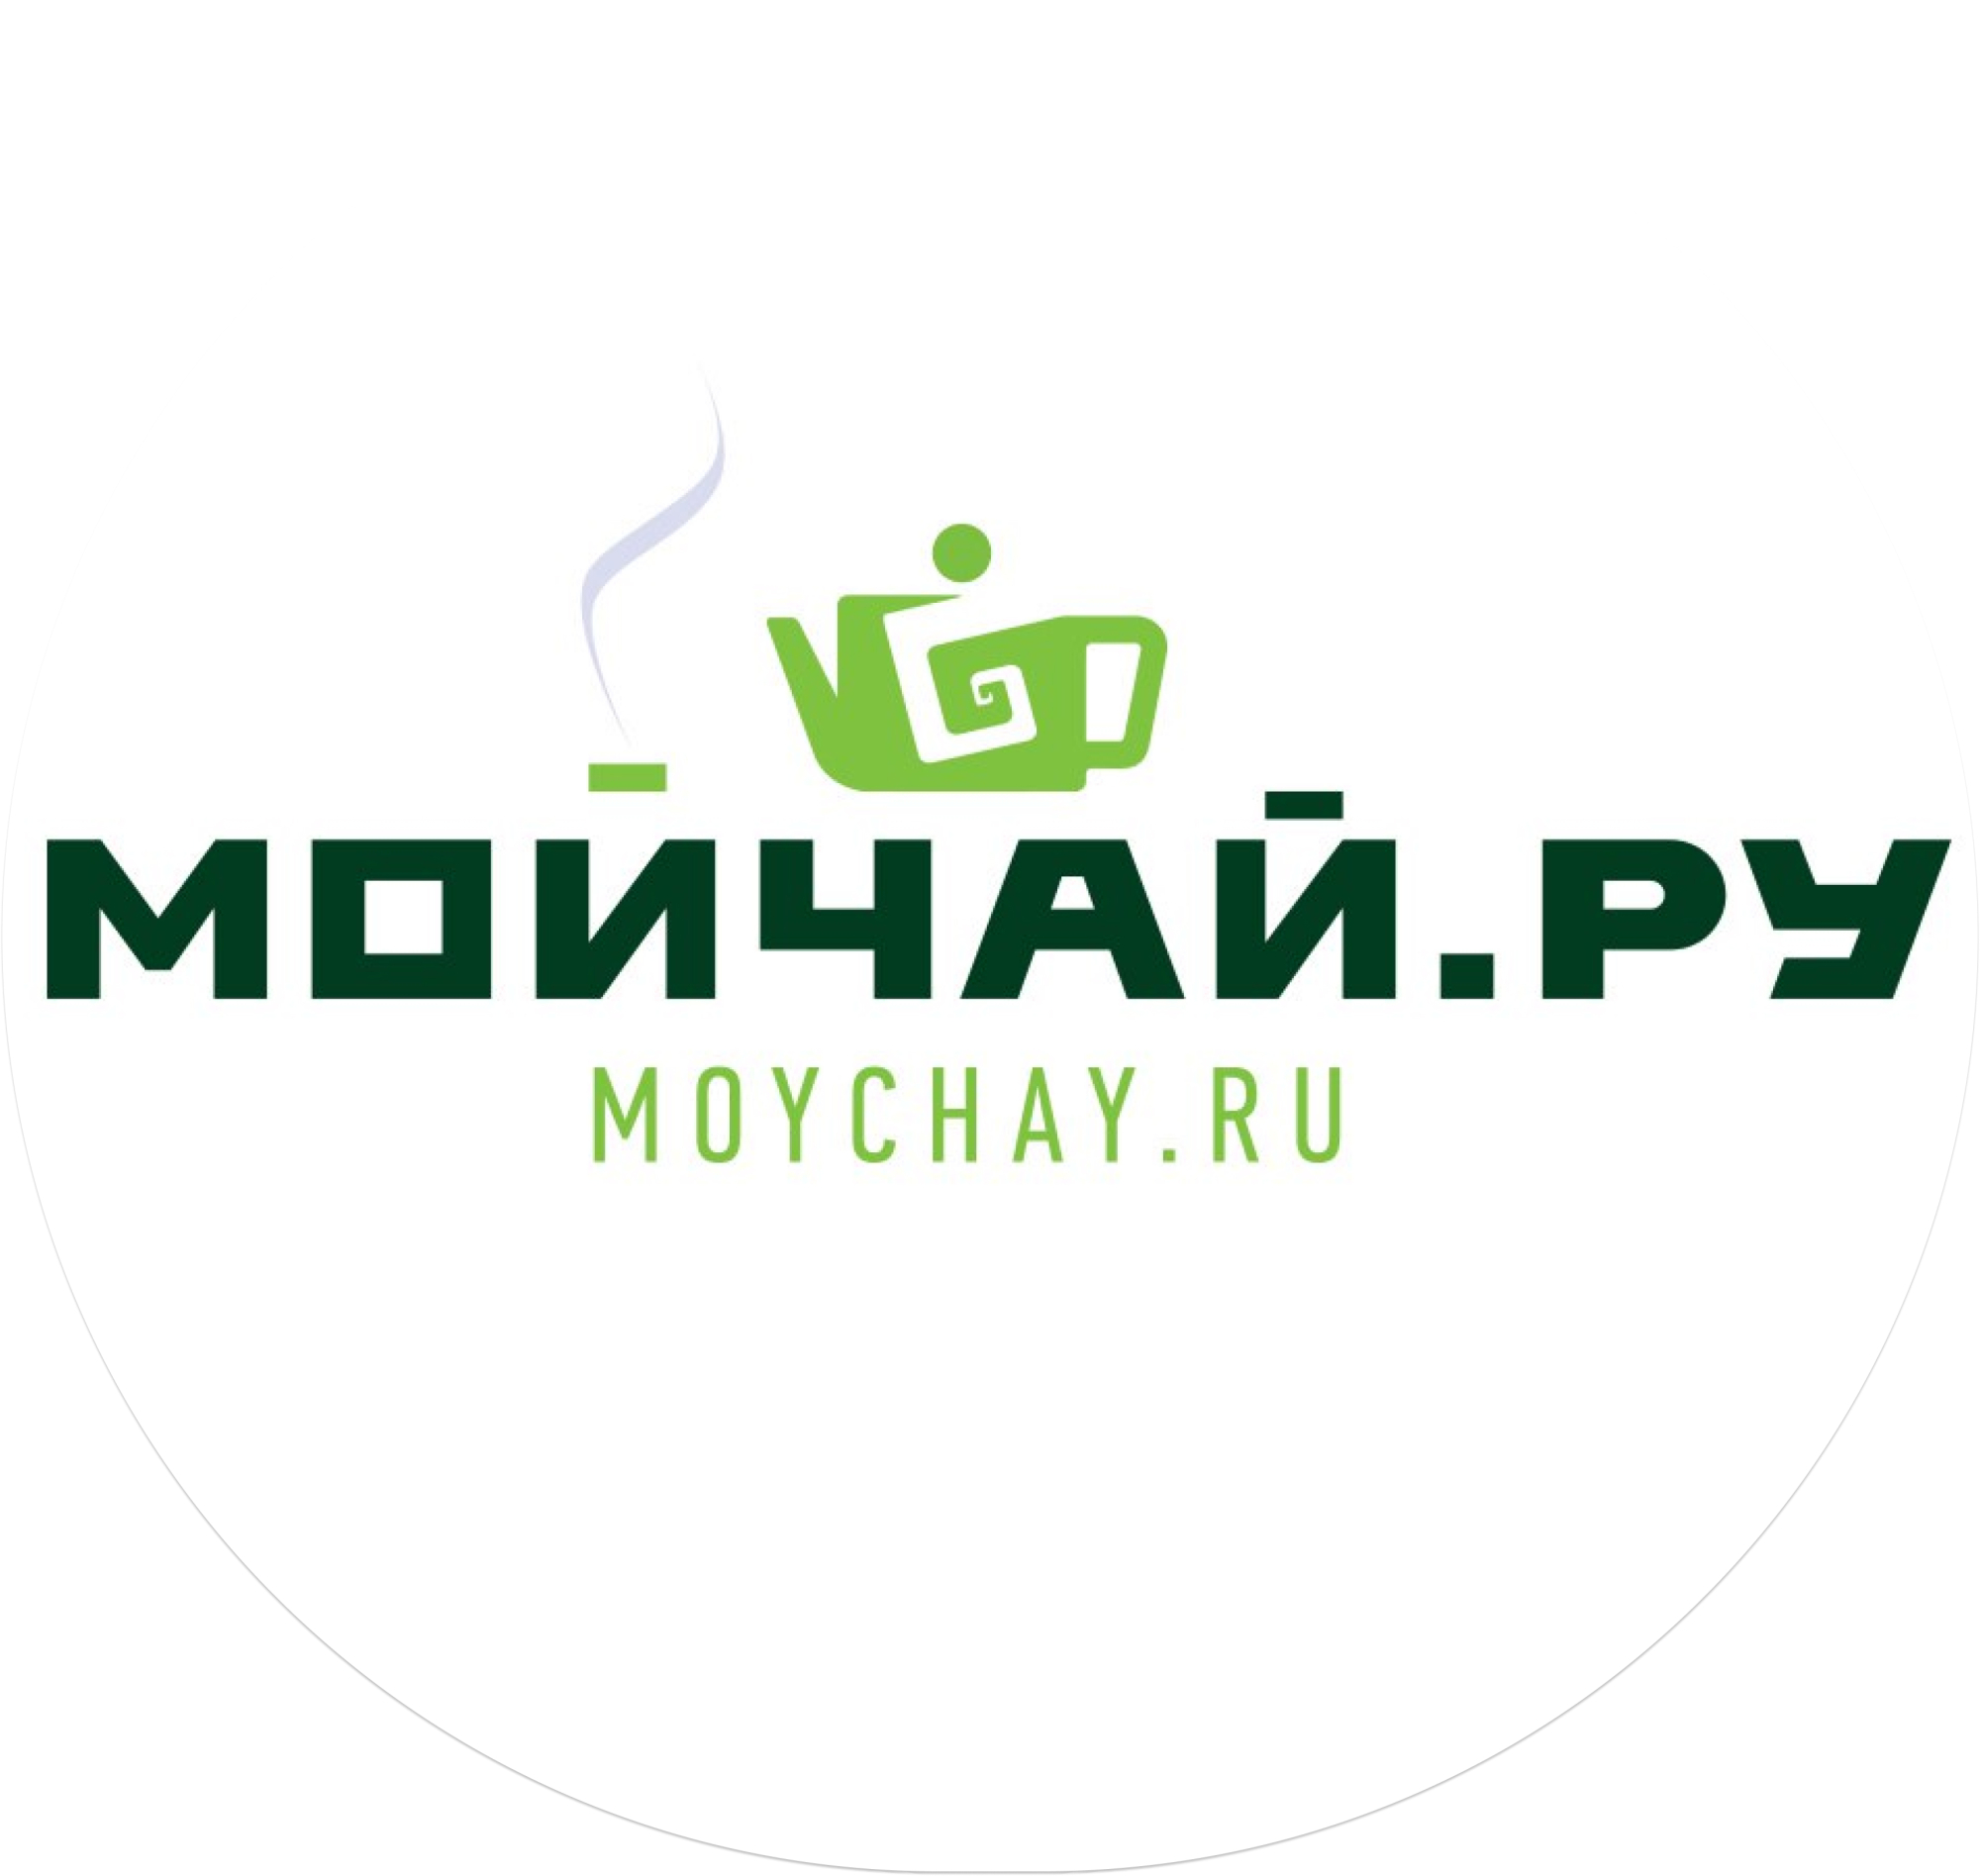 Мойчай.ру